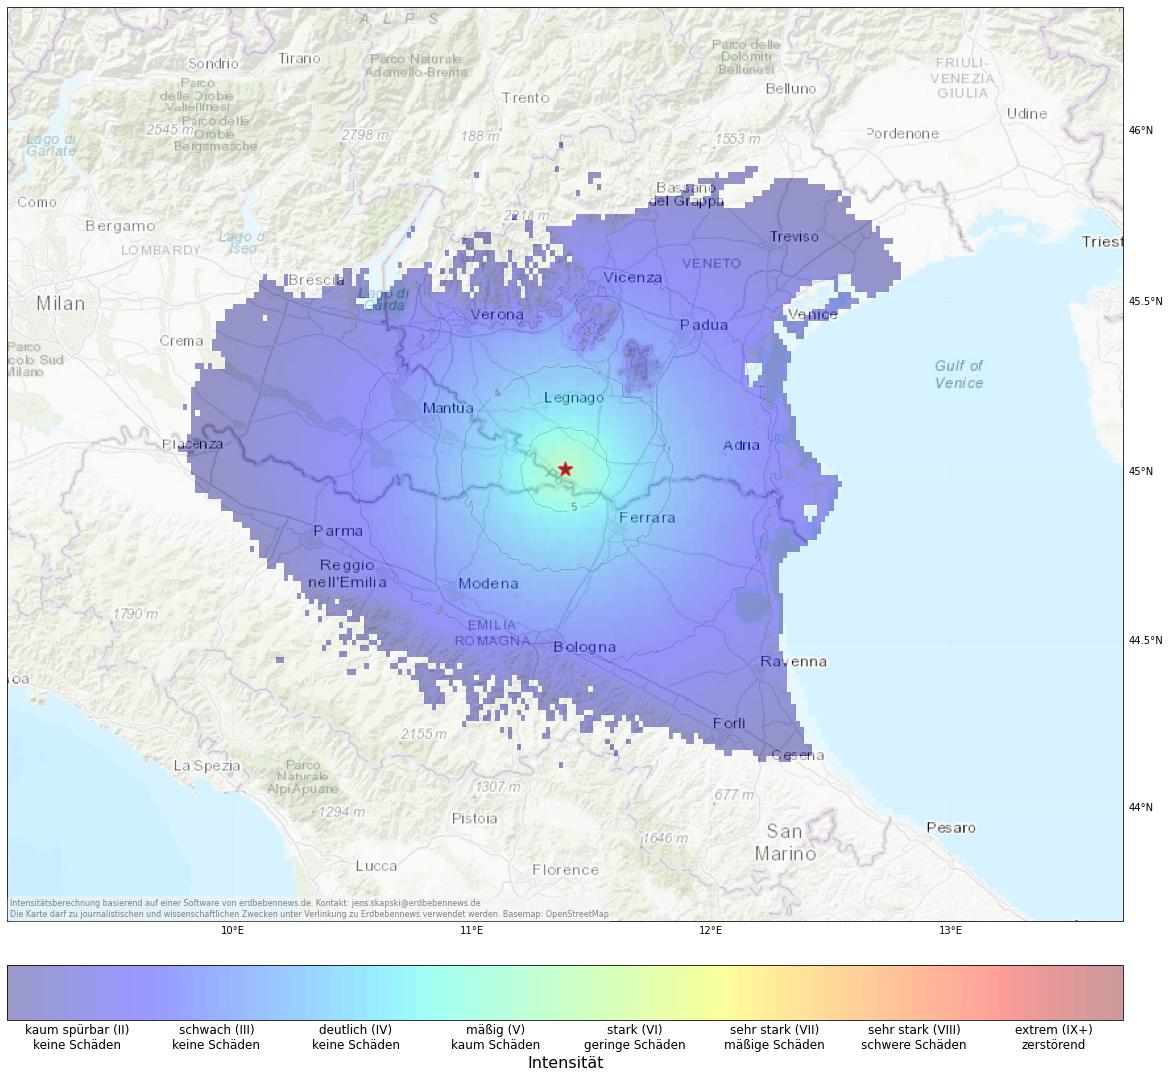 Berechnete Intensität (ShakeMap) des Erdbebens der Stärke 4.2 am 26. Oktober, 17:29 Uhr in Italien